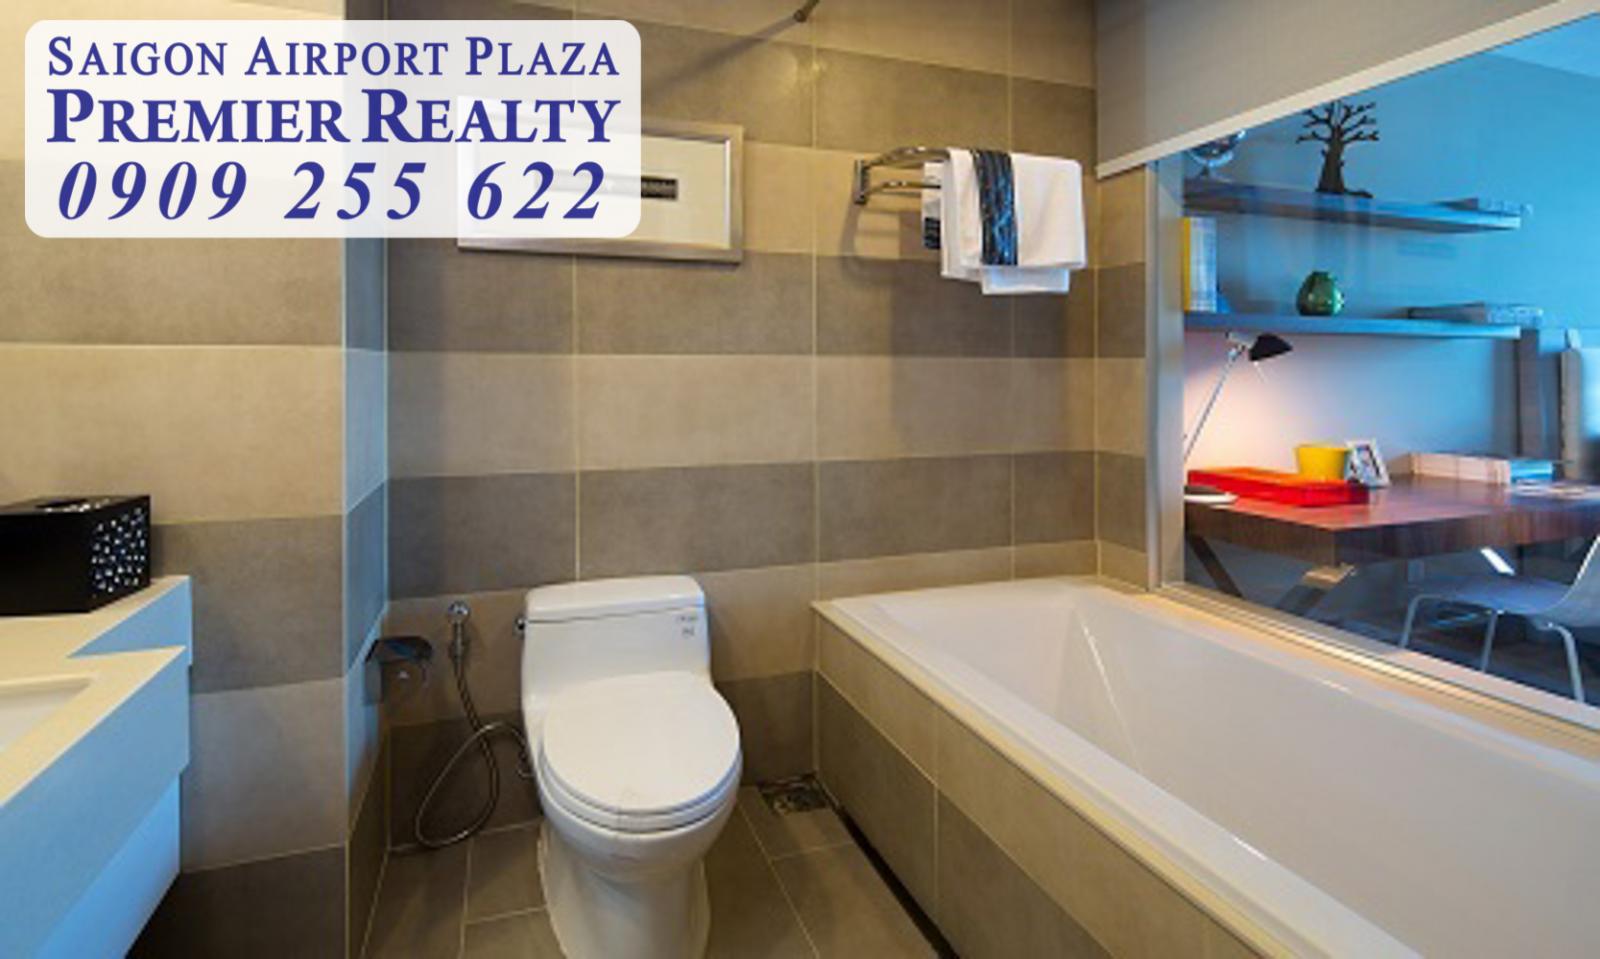 Quản lý tất cả giỏ hàng cho thuê căn hộ chung cư 1-2-3PN Saigon Airport Plaza. Hotline PKD 0909 255 622